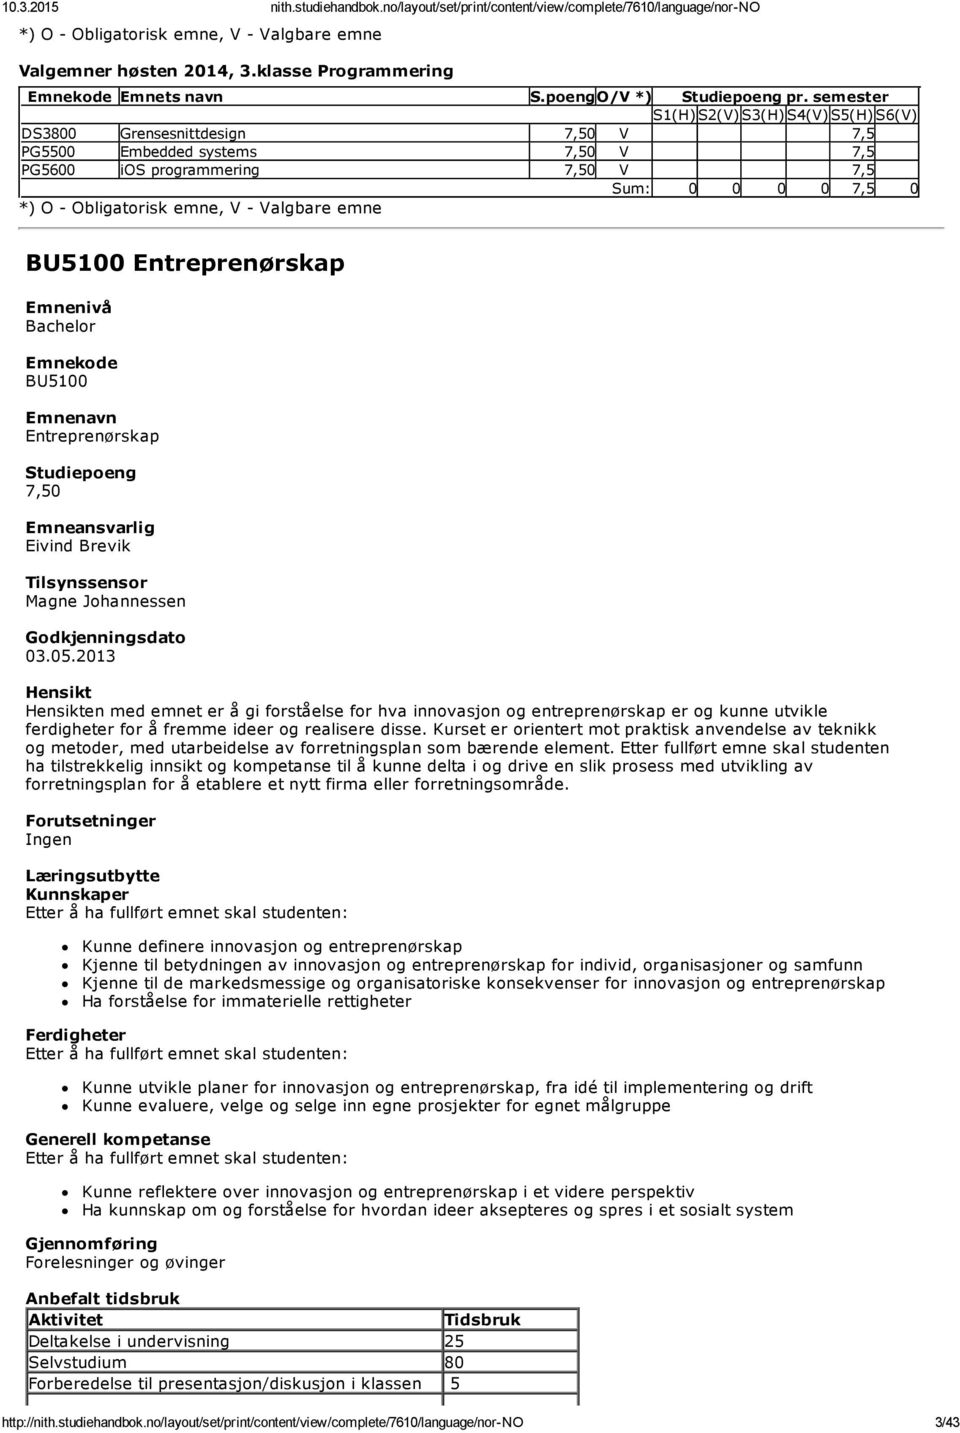 BU5100 Entreprenørskap BU5100 Entreprenørskap Eivind Brevik Tilsynssensor Magne Johannessen 03.05.